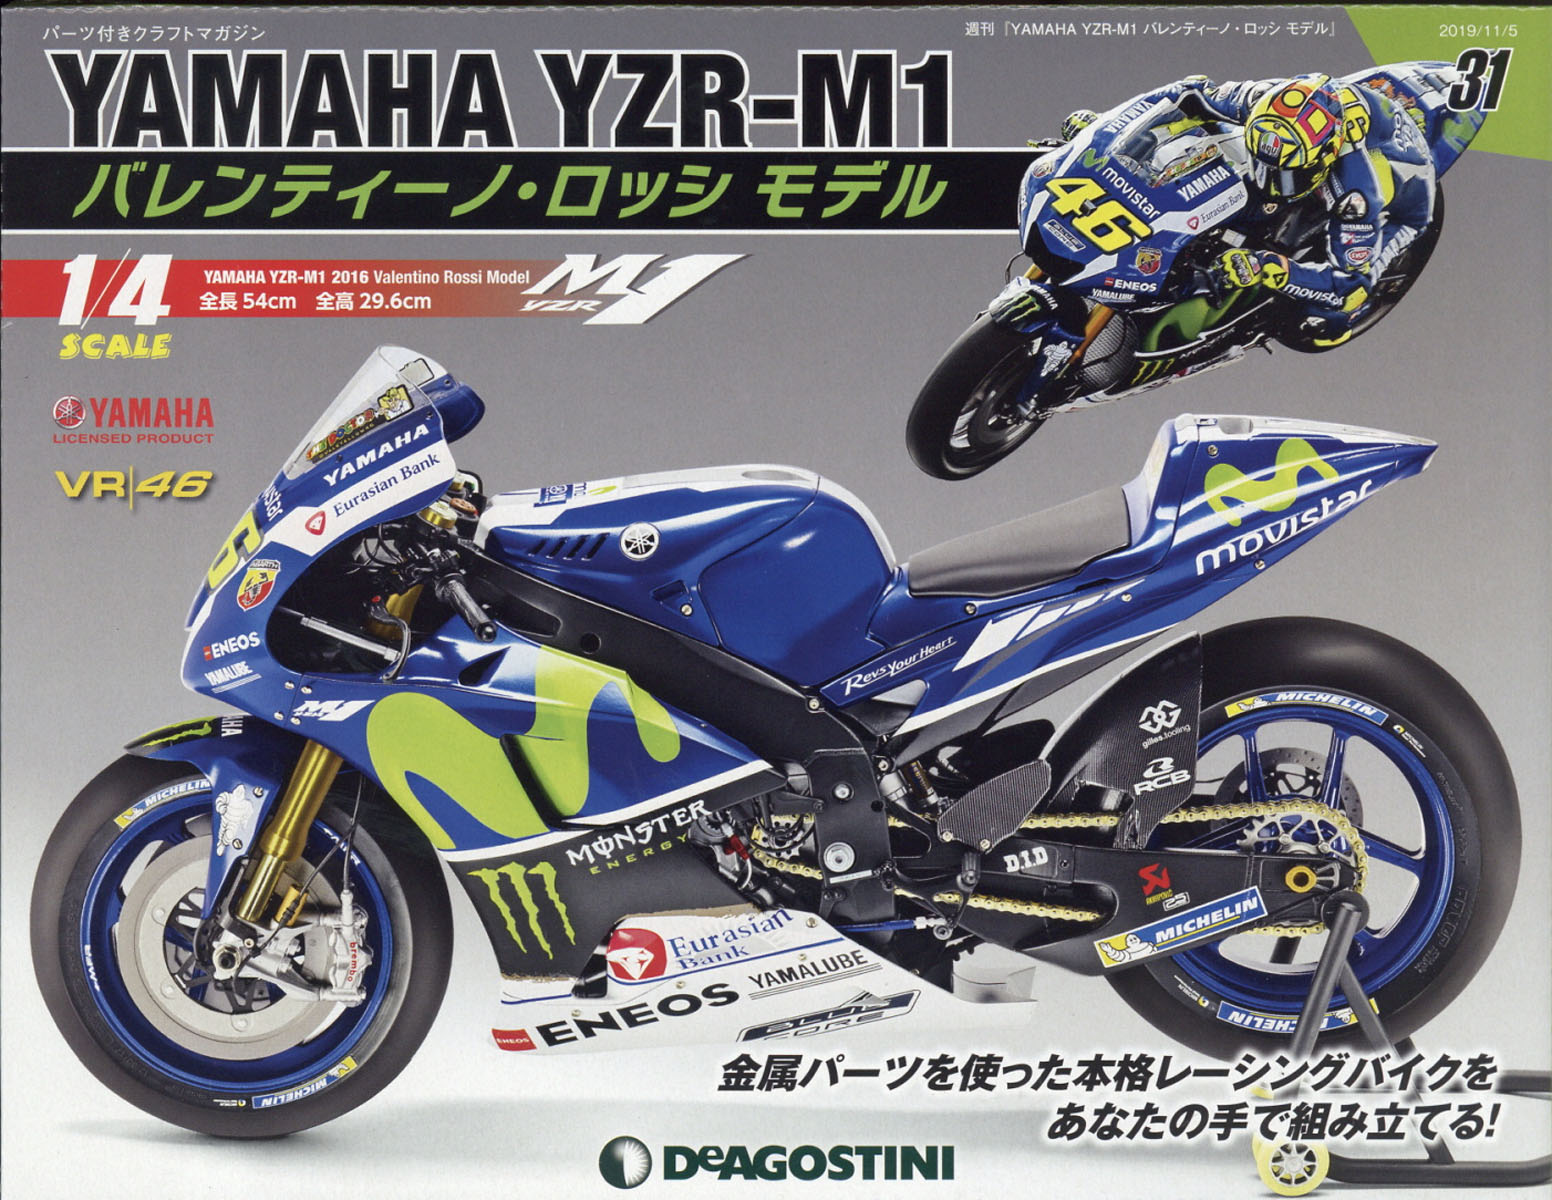 週刊 YAMAHA YZR-1 バレンティーノ・ロッシ モデル 2019年 11/5号 [雑誌]